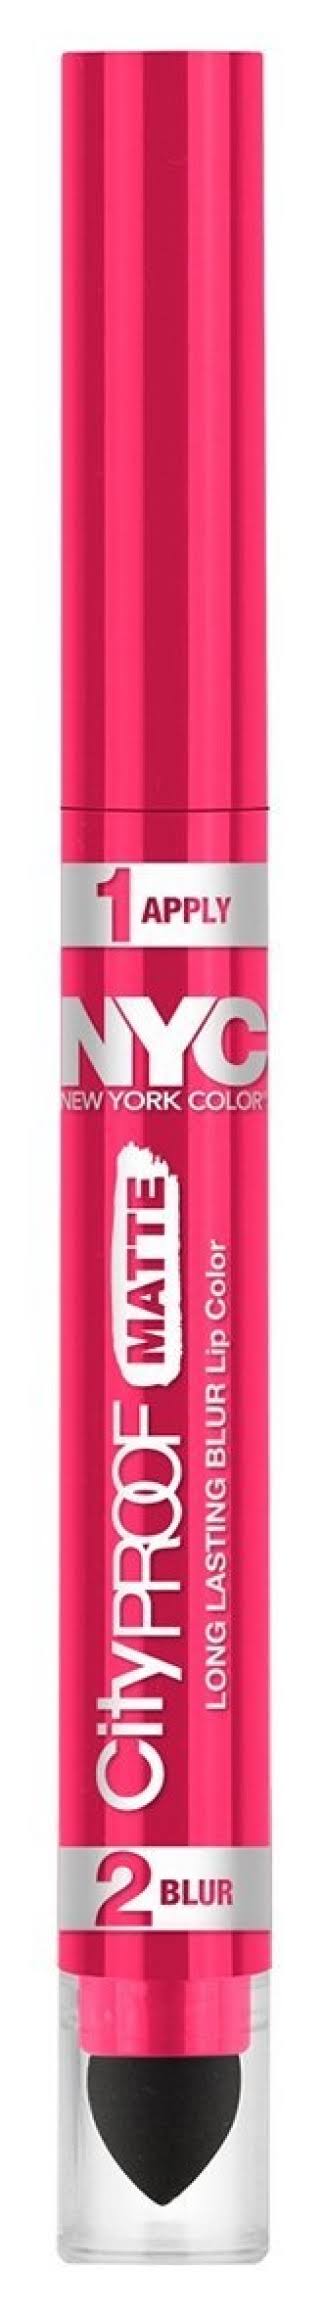 NYC City Proof Matte Blur Lip Color - Fashion Fuchsia